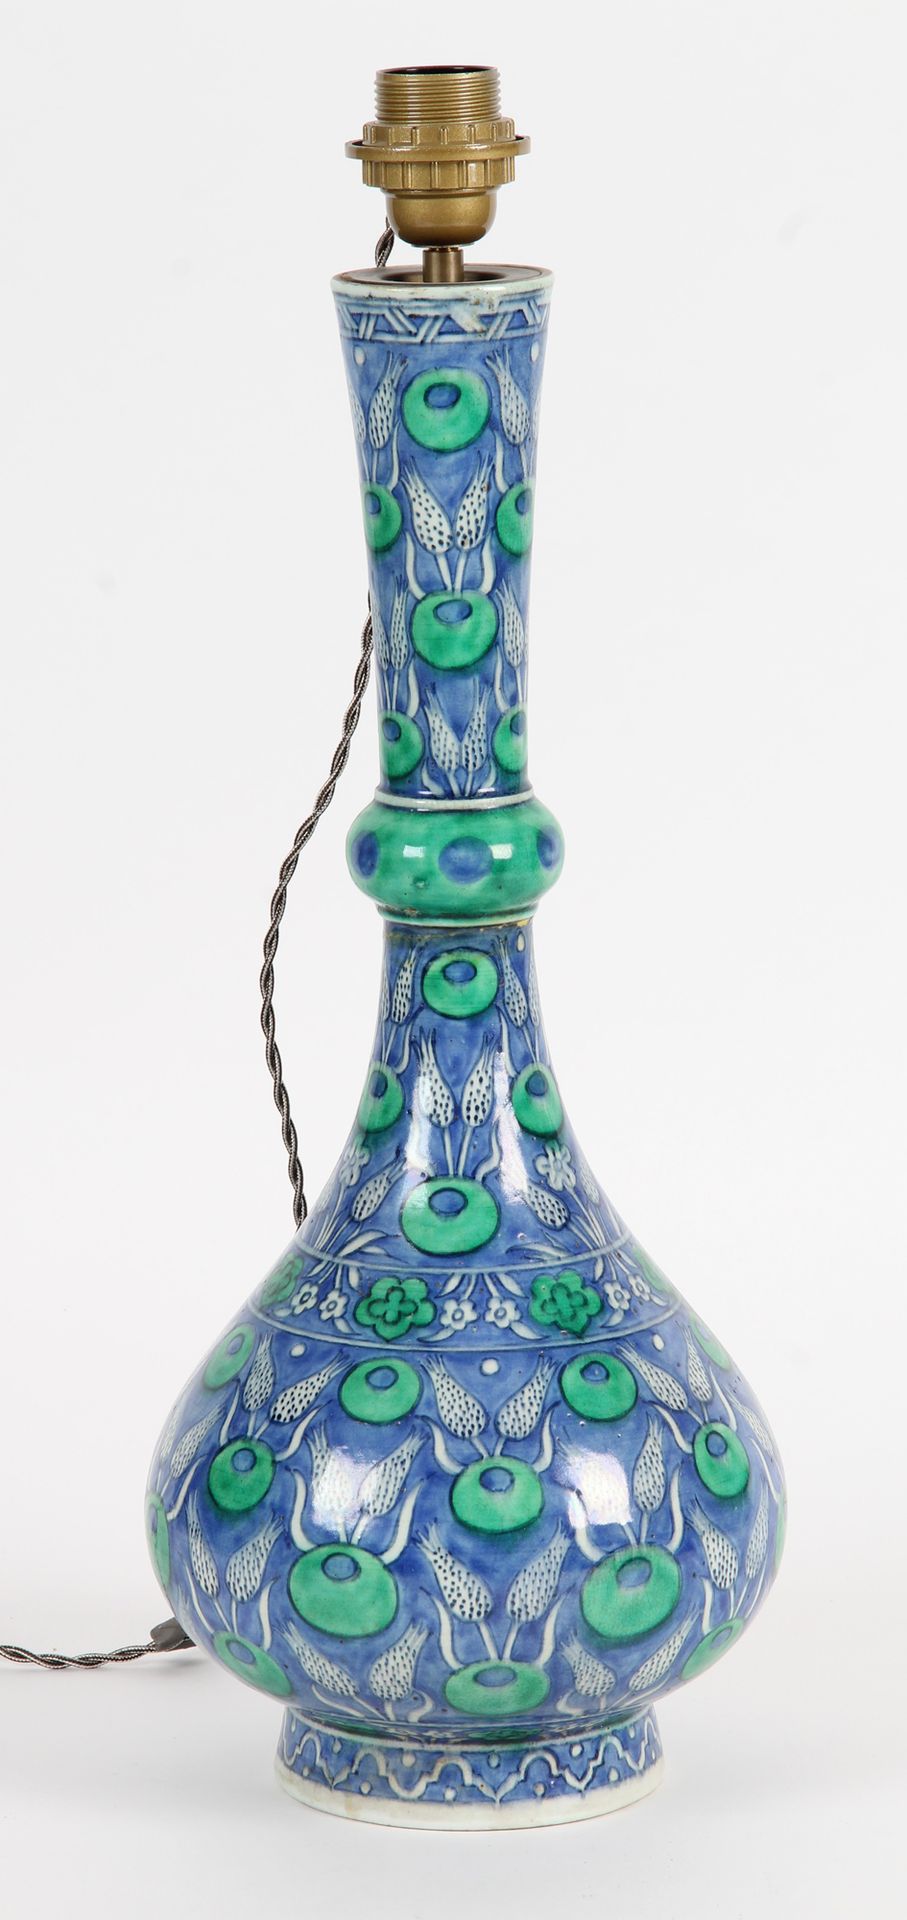 Null 大型球状环形花瓶，伊兹尼克风格，蓝色和绿色釉面陶瓷，装饰有鲜花和树叶。作为一盏灯安装。

(颈环下的事故)

H.49厘米